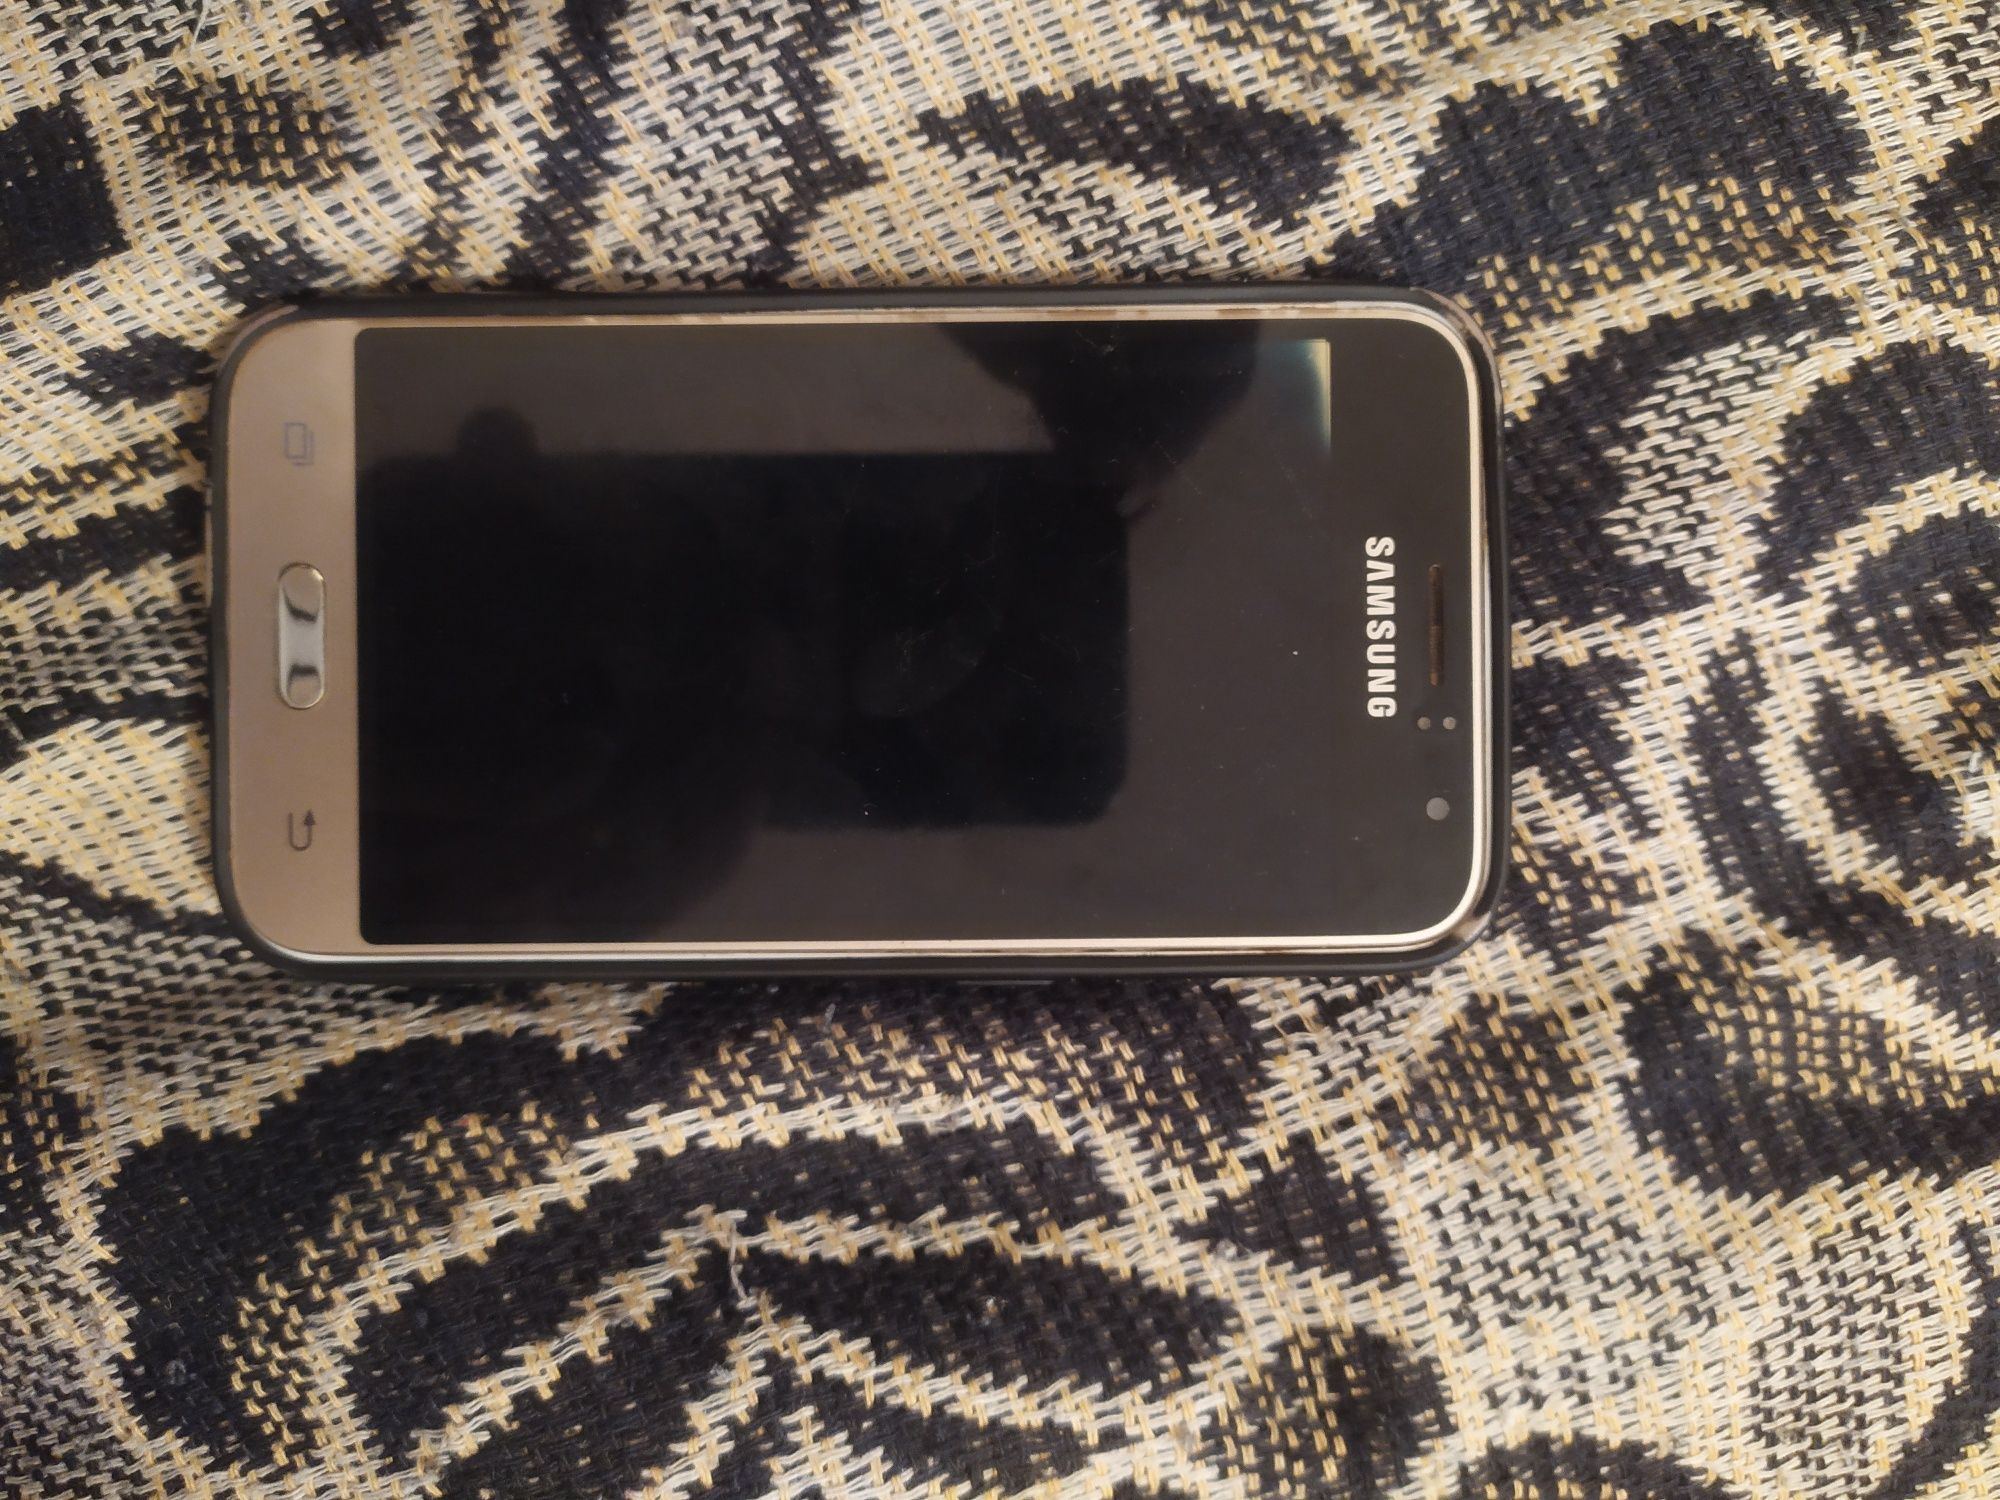 Samsungj2 holati ekrani ketgan